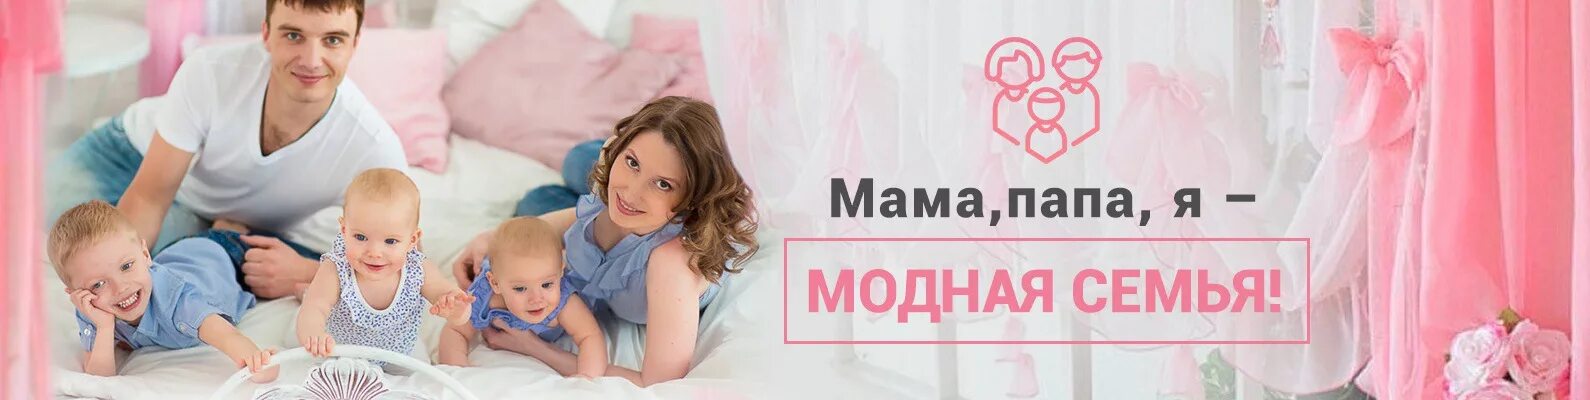 Новосибирск в контакте детские пособия мамочки. Одежда для всей семьи баннер. Мама и папа в магазине. Магазин мама папа я. Вывеска модная семья.